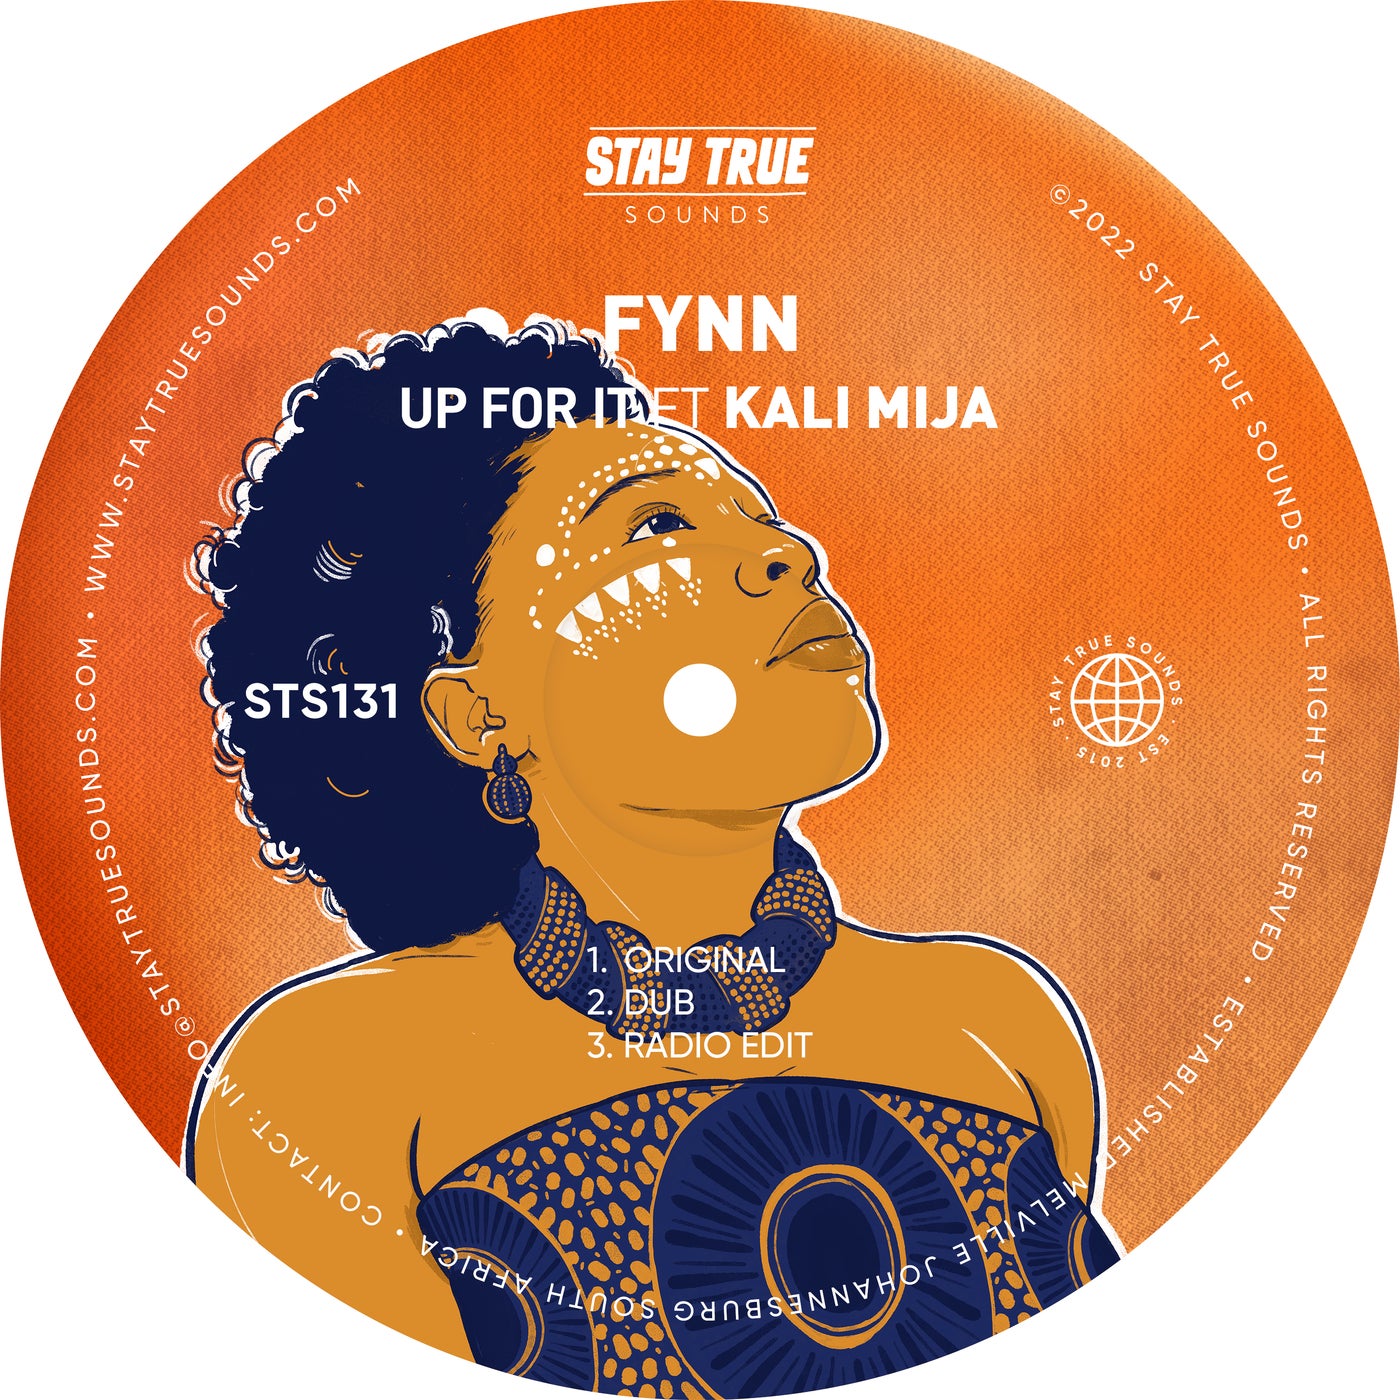 Fynn - Up for It (feat. Kali Mija) [Stay True Sounds]